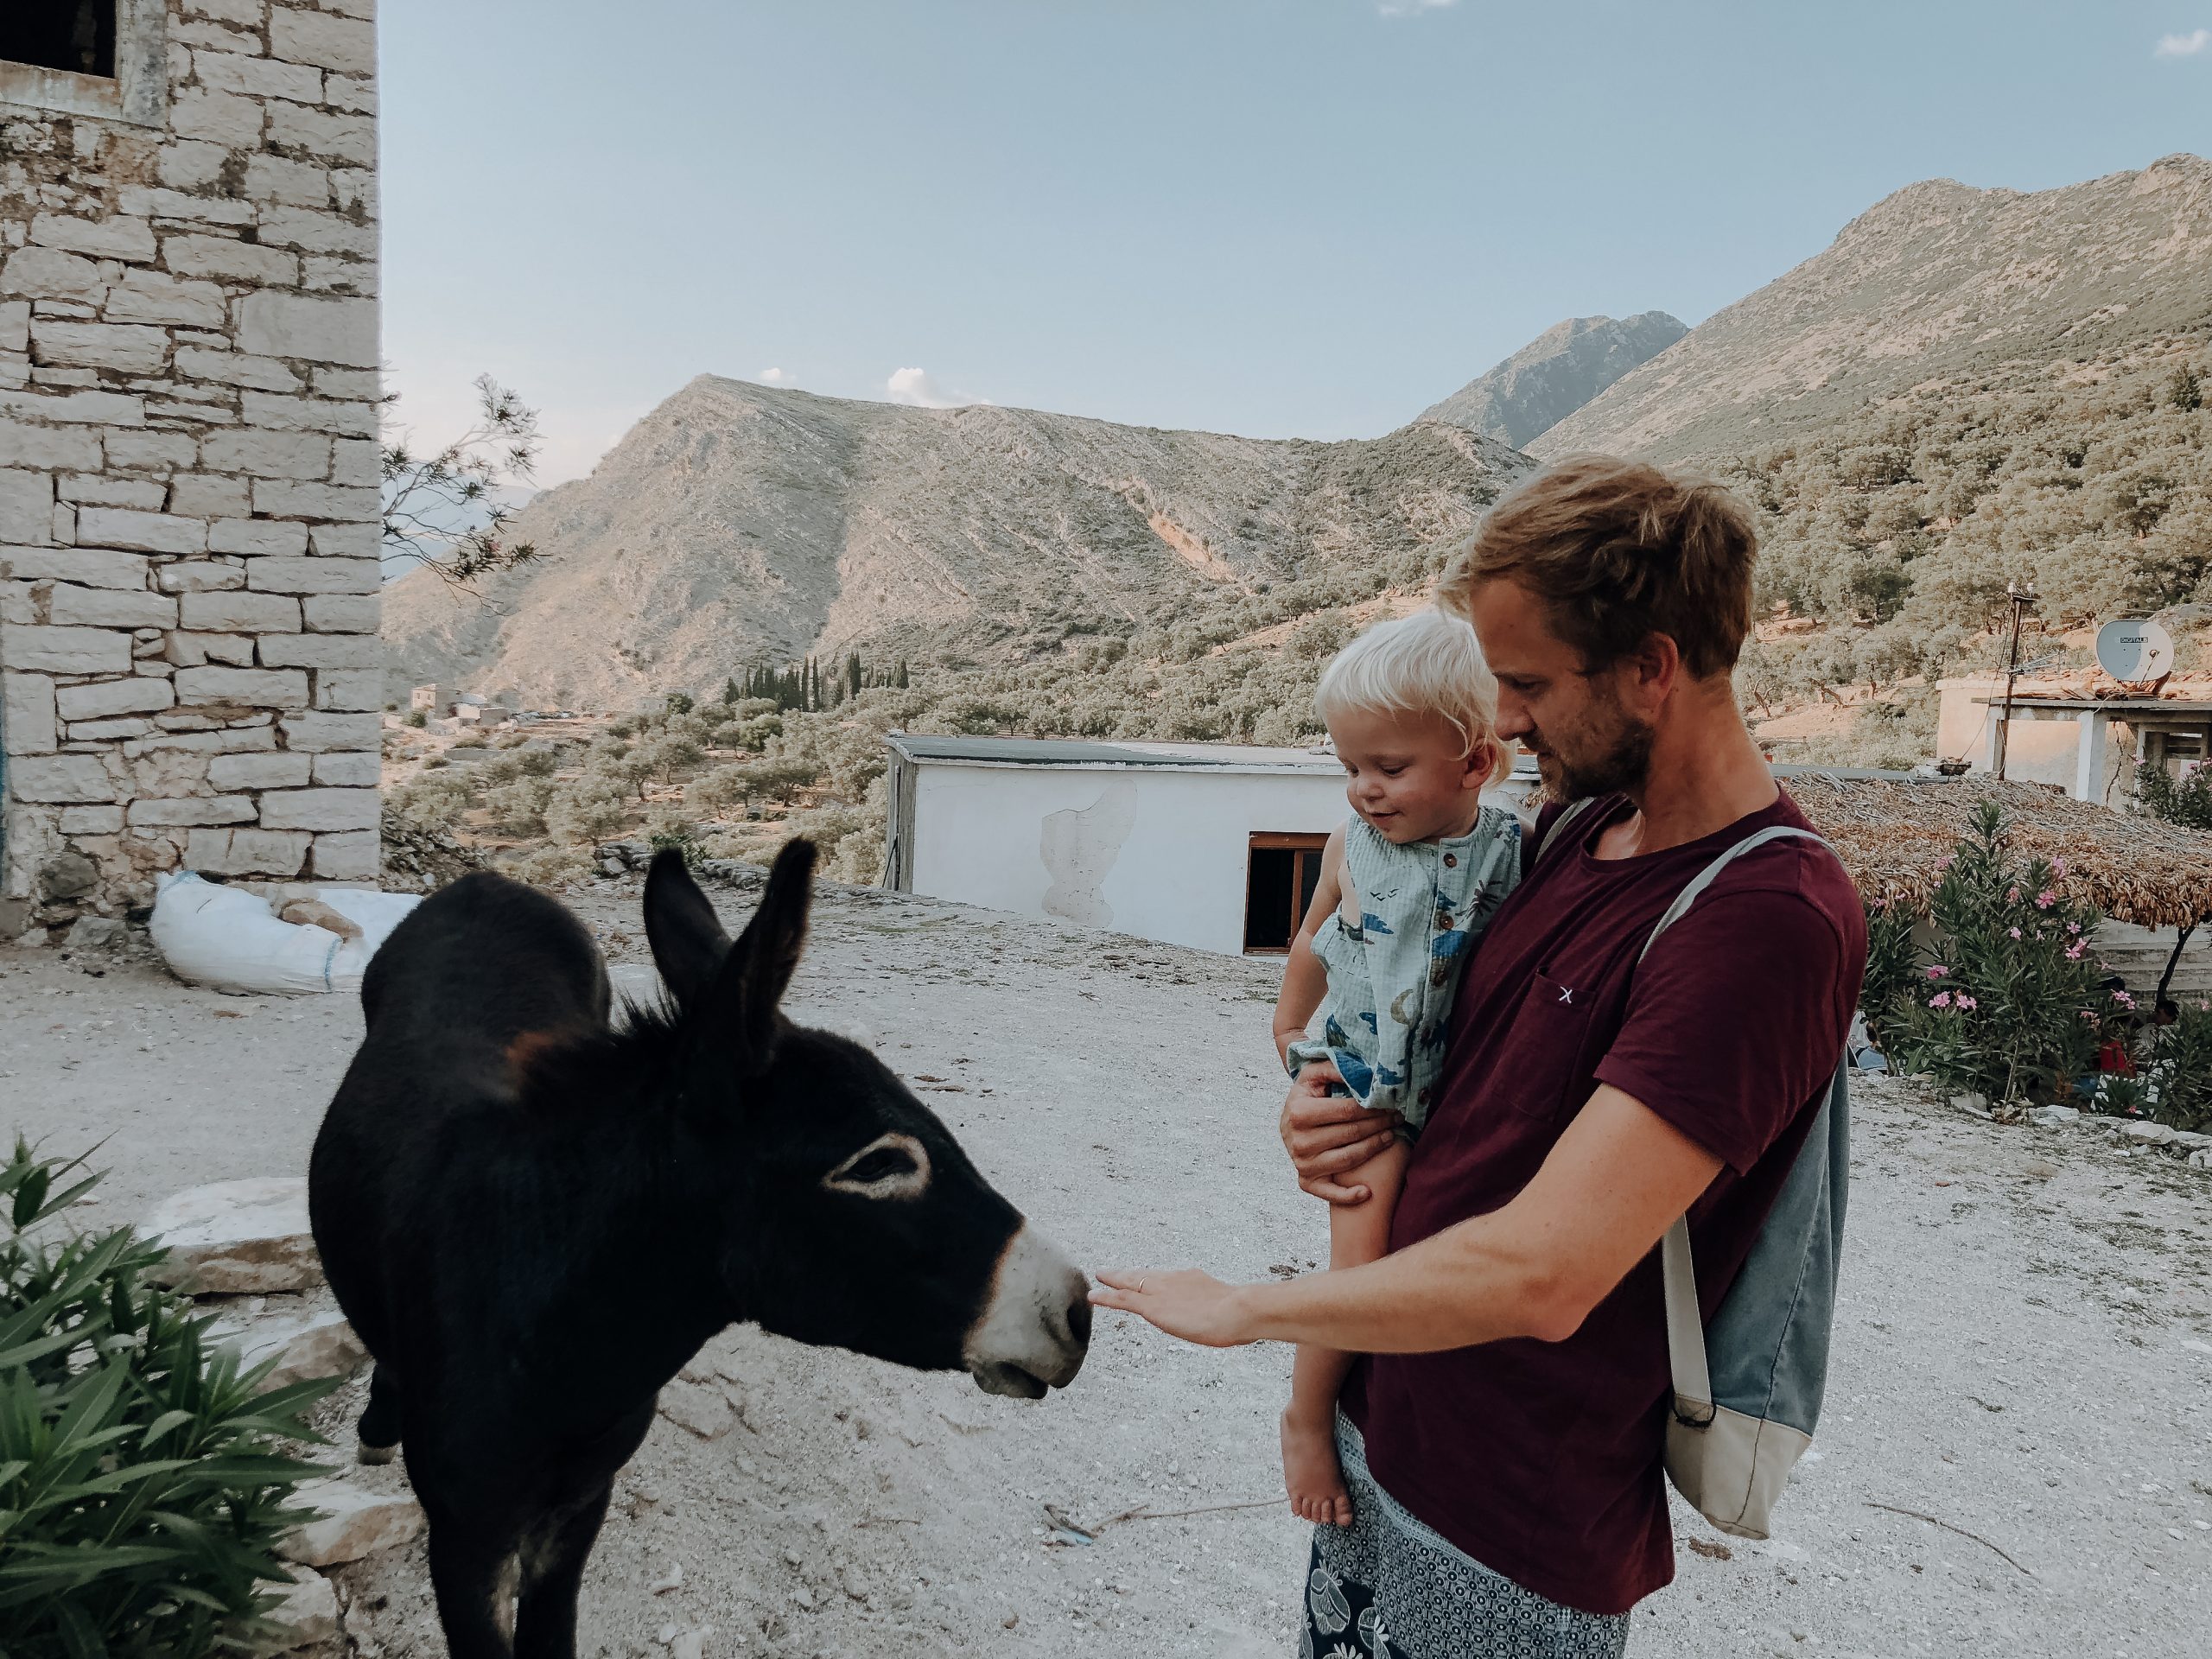 Mann mit Kind auf dem Arm füttert Esel in Albanien auf Reisen